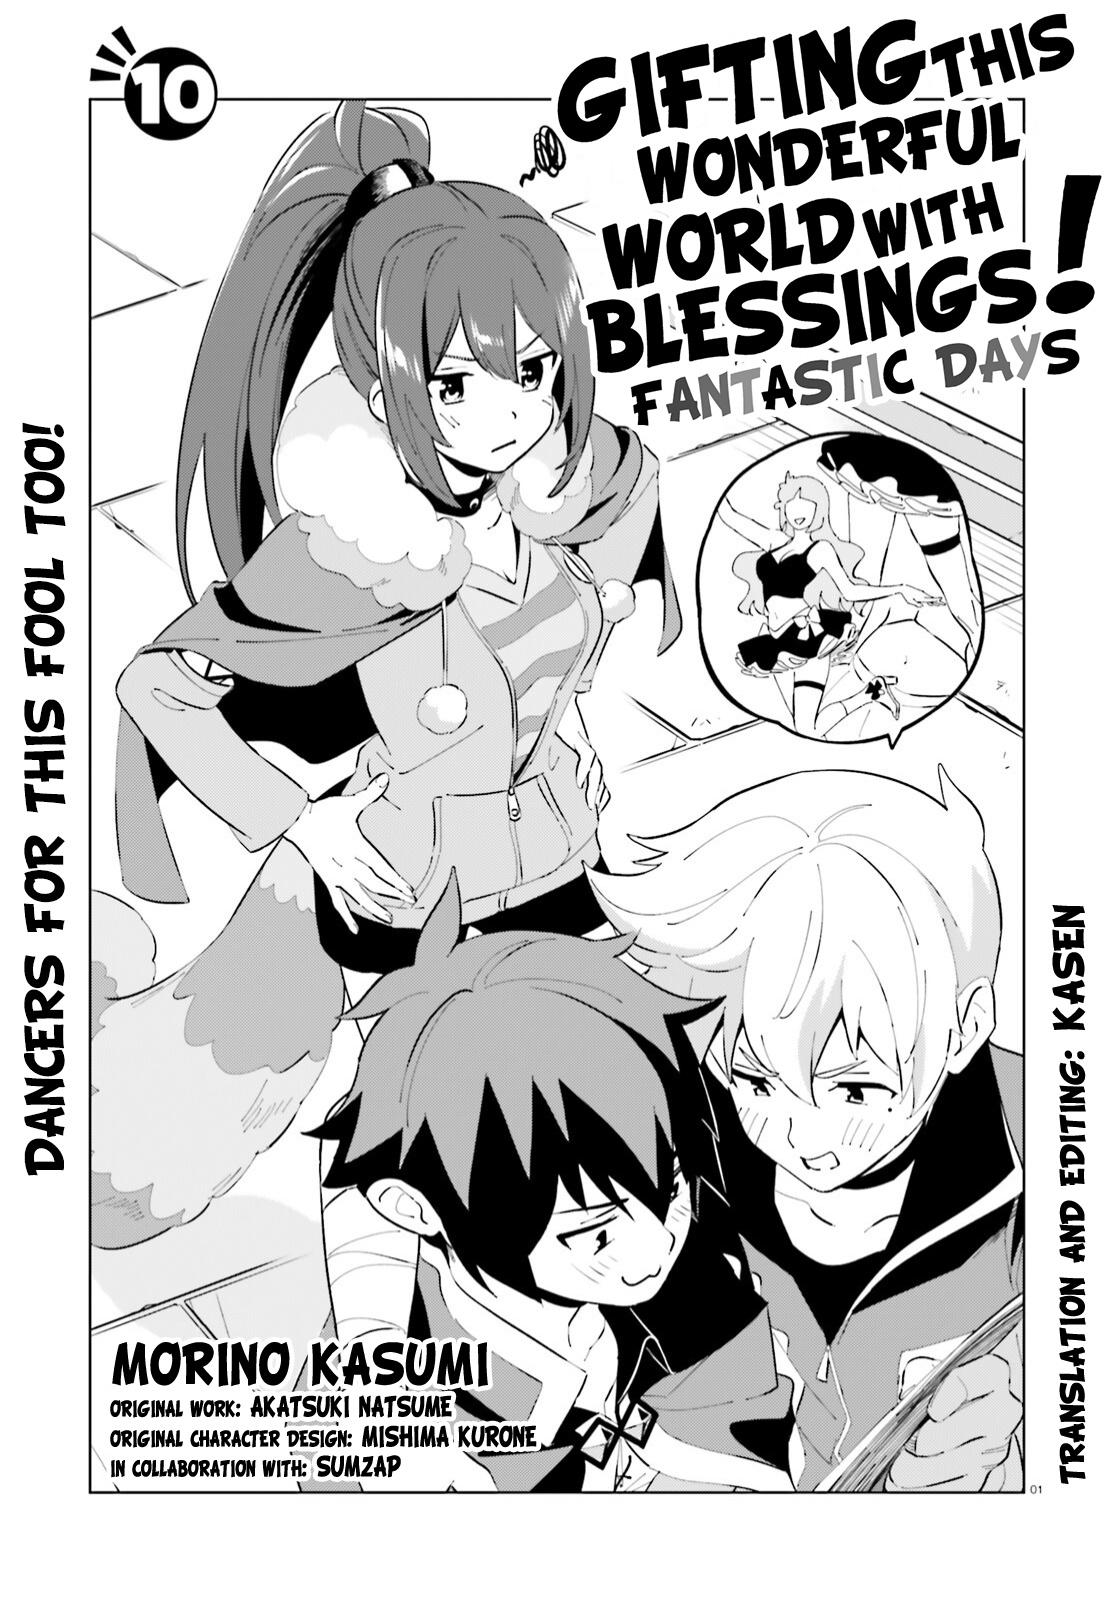 KonoSuba: God's Blessing on This Wonderful World! Fantastic Days Manga